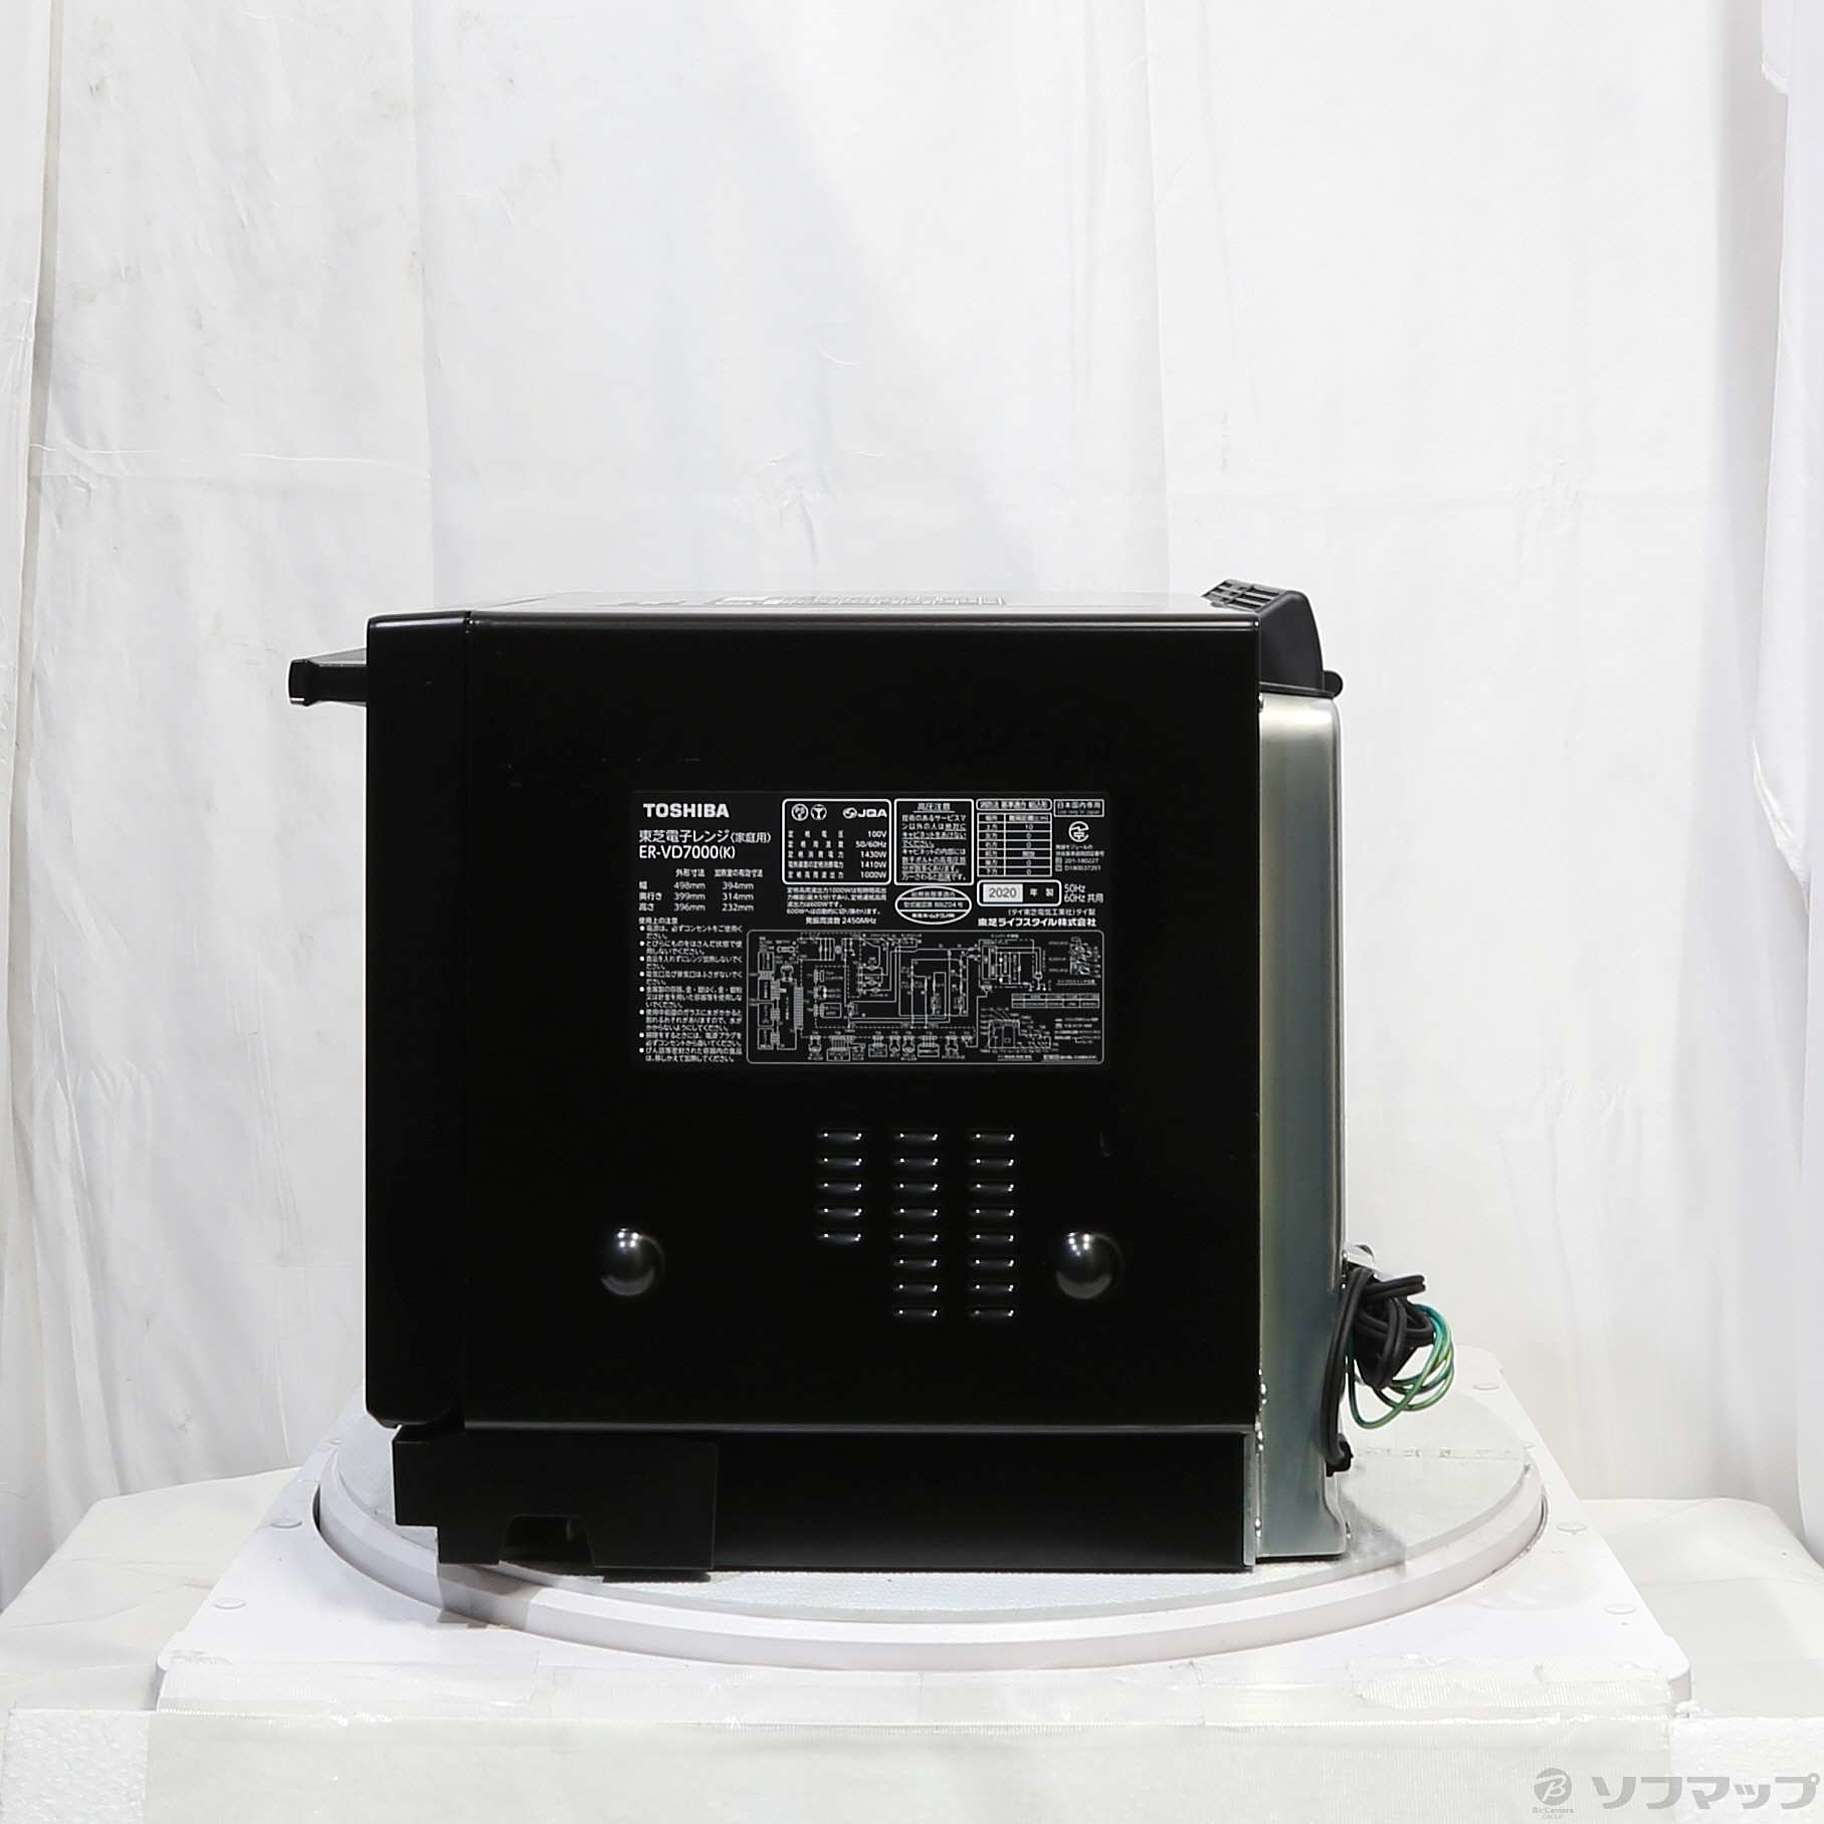 TOSHIBA ER-VD7000(K) BLACK - 電子レンジ・オーブン